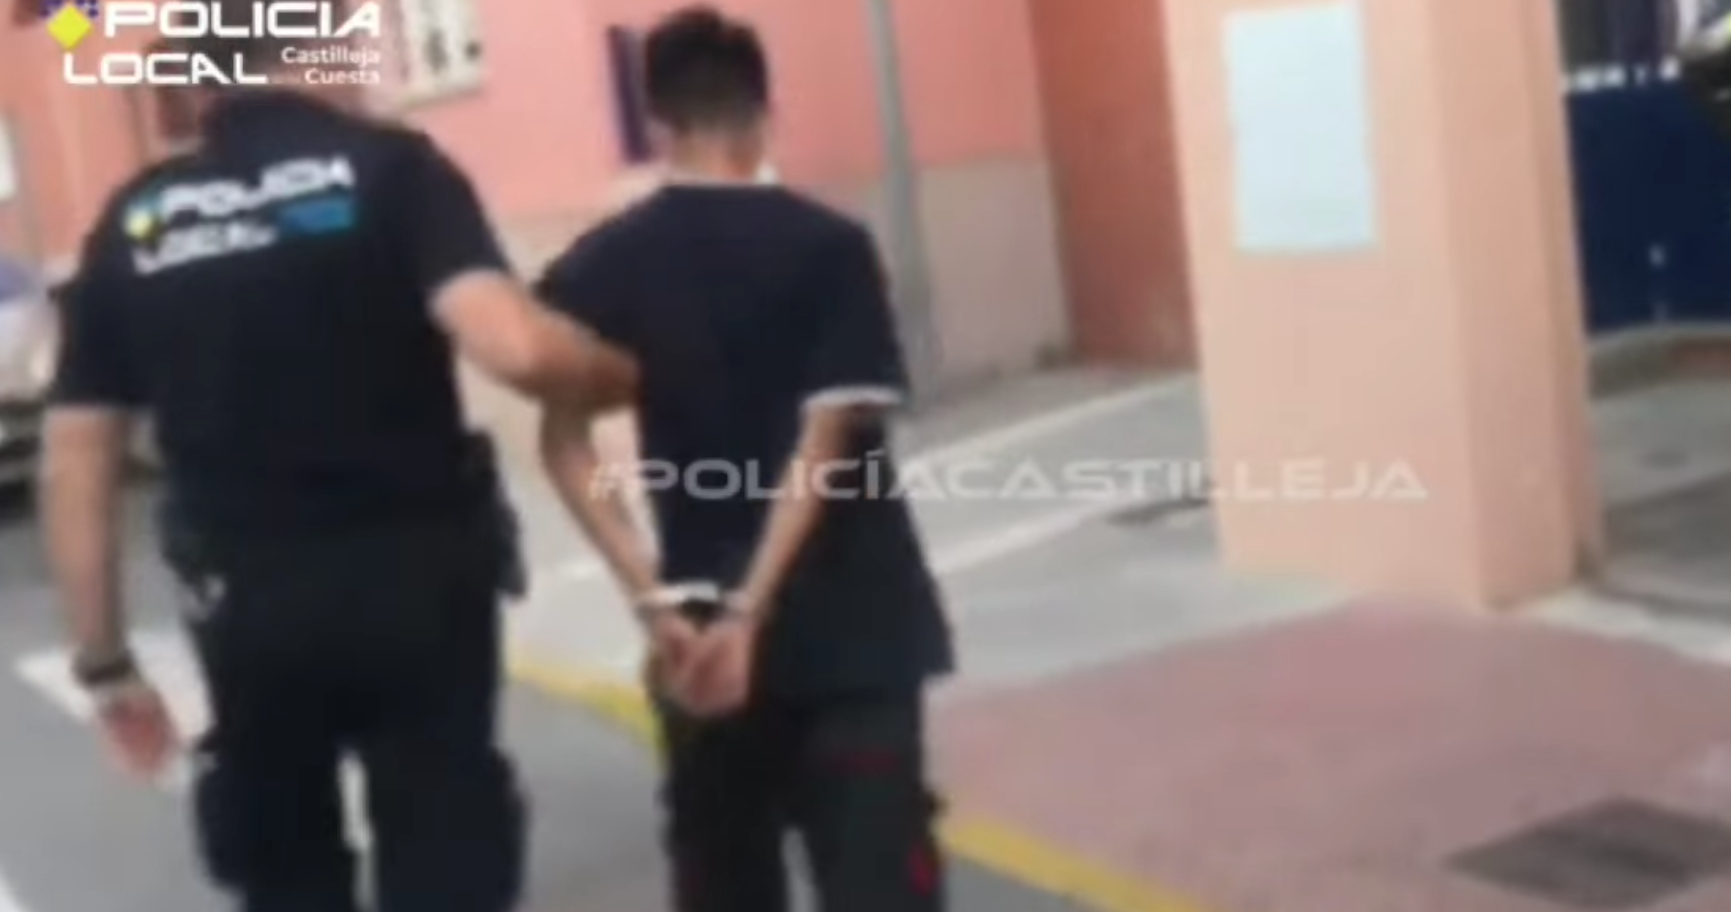 El joven de 19 años, detenido por la Policía Local de Castilleja de la Cuesta.